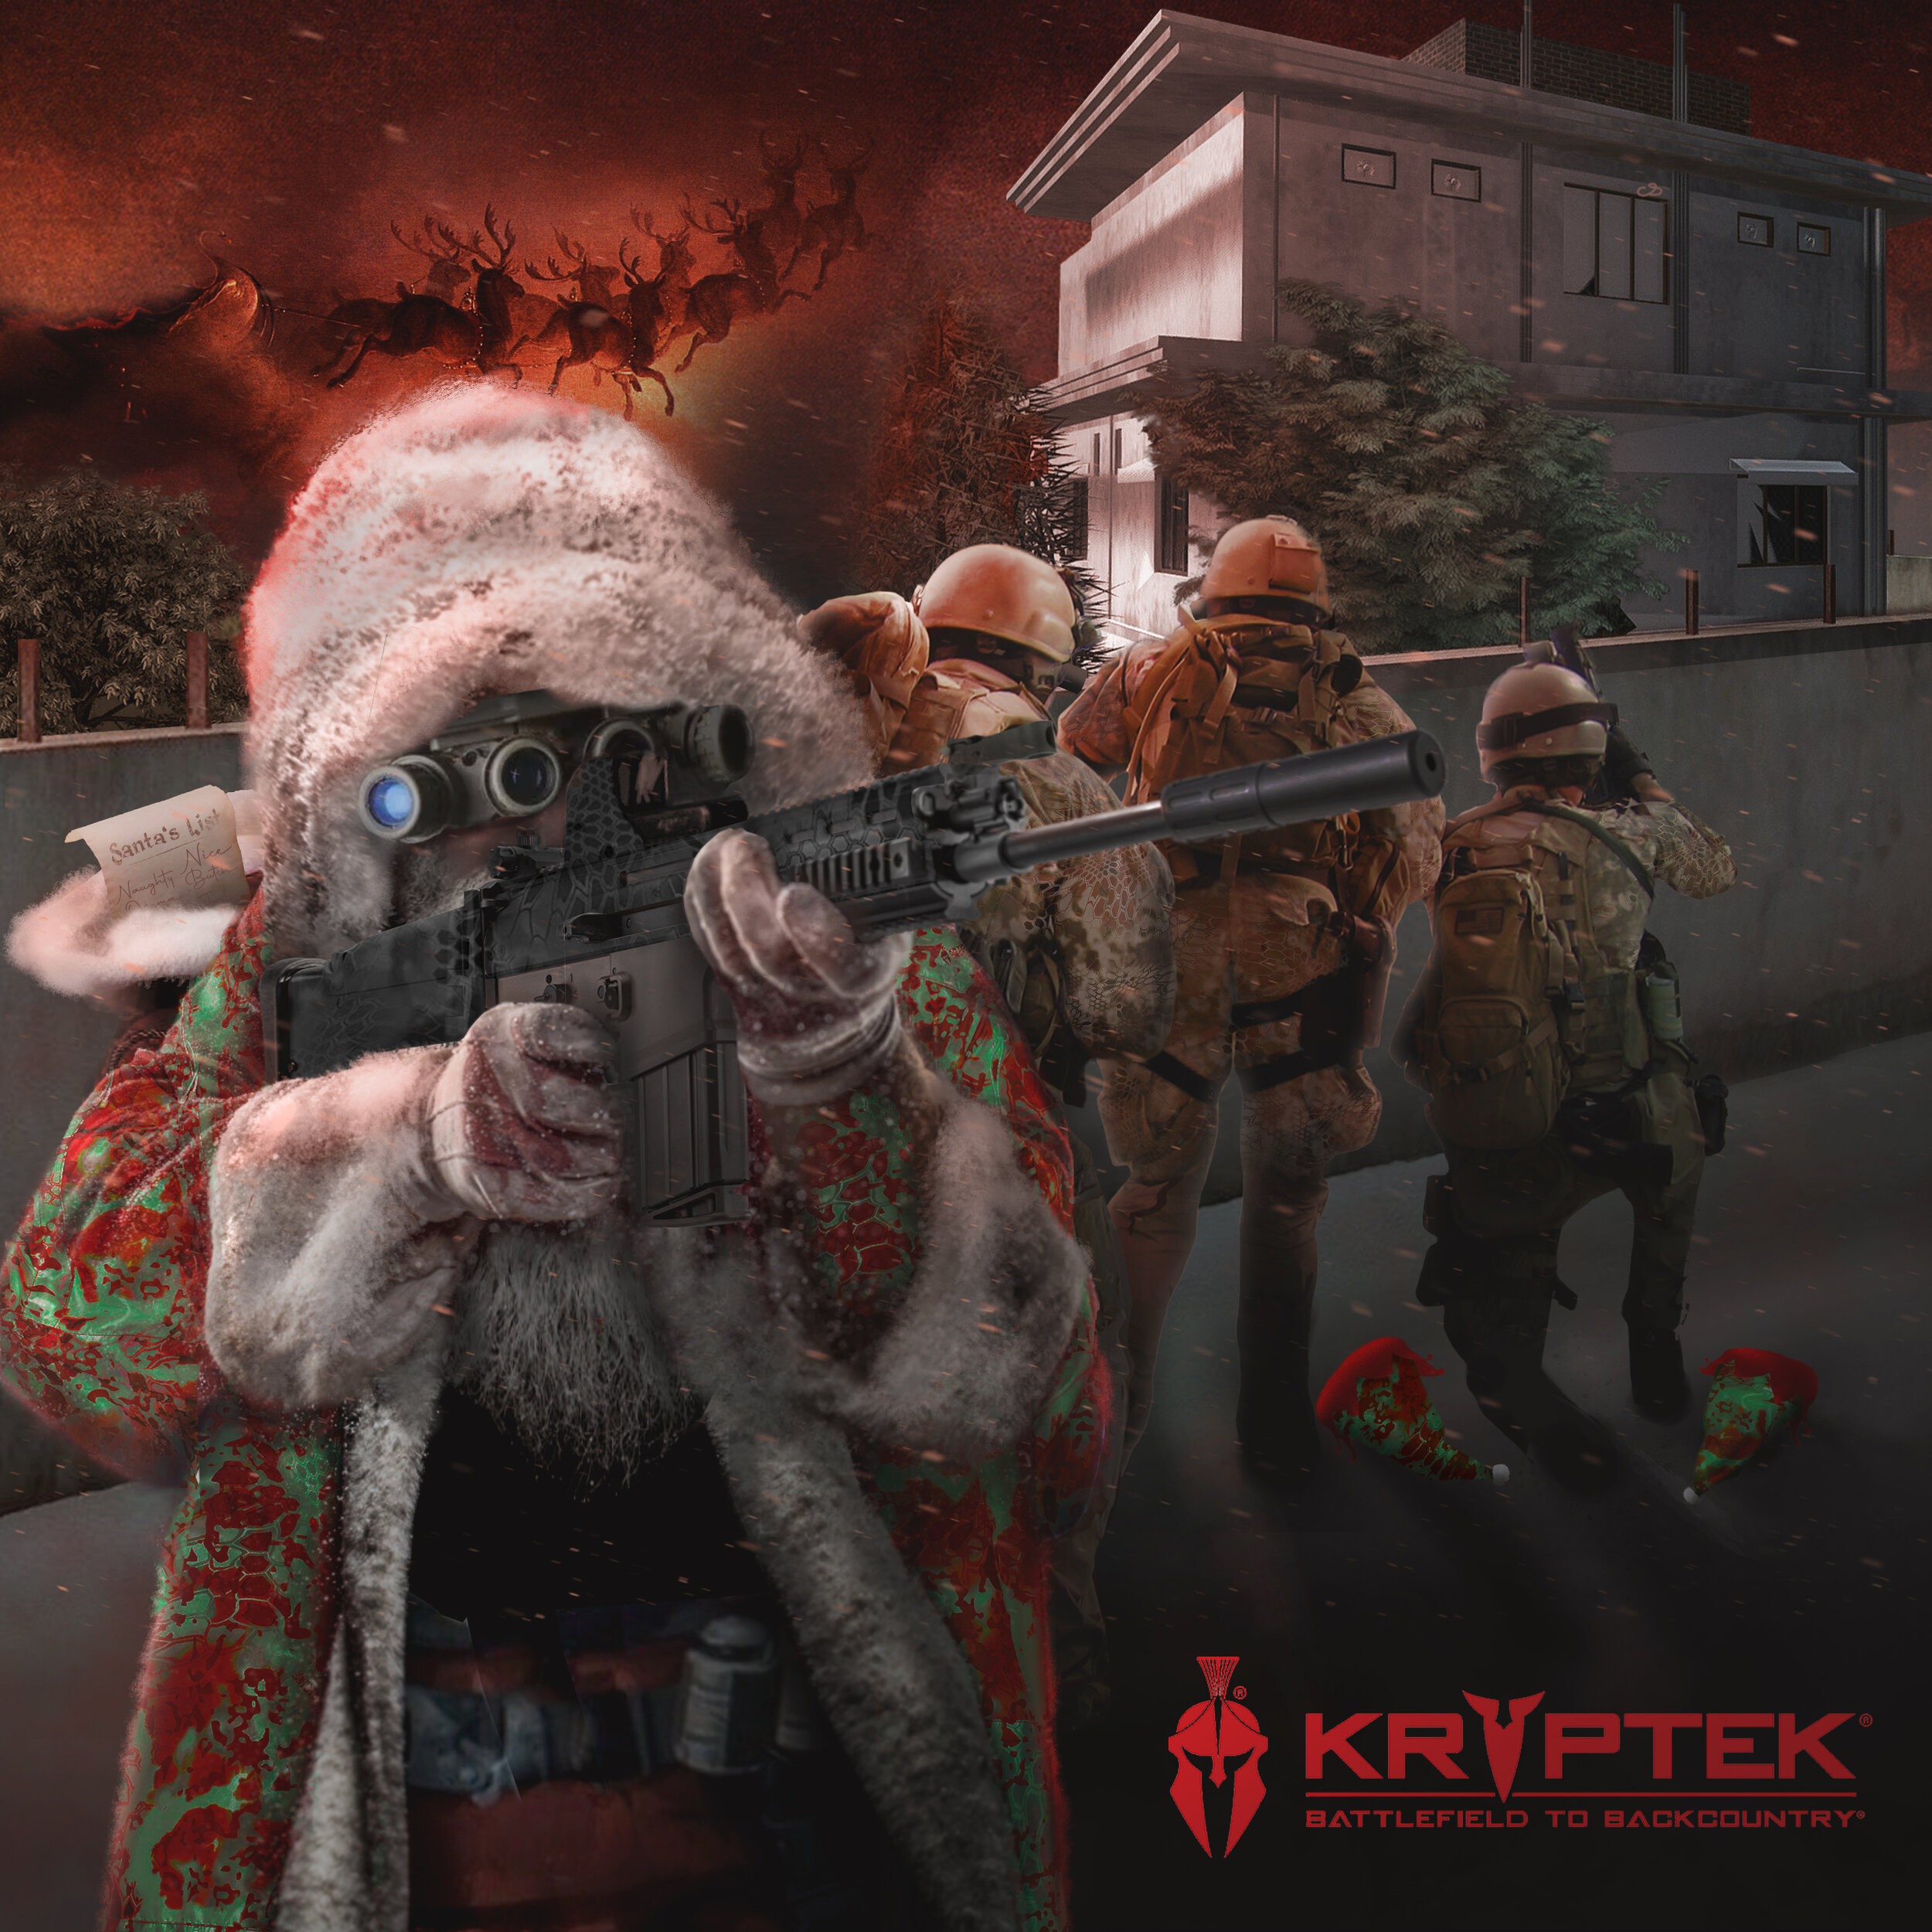 Christmas Social Media Post for Krytpek®